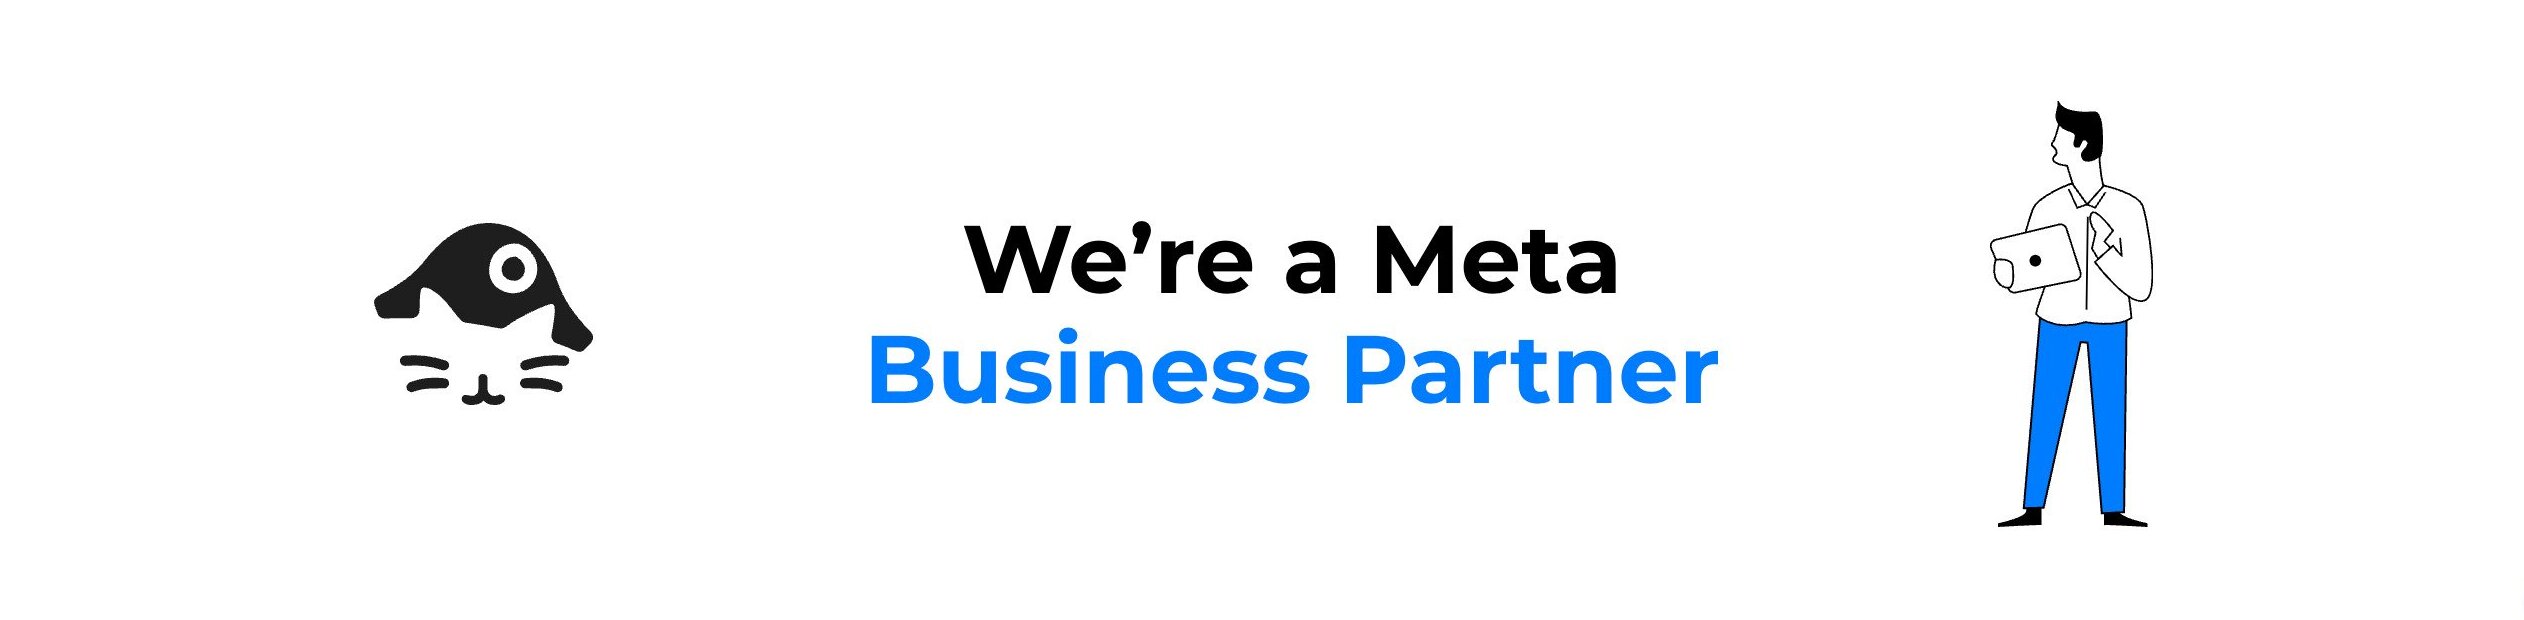 instagram desktop - meta business partner